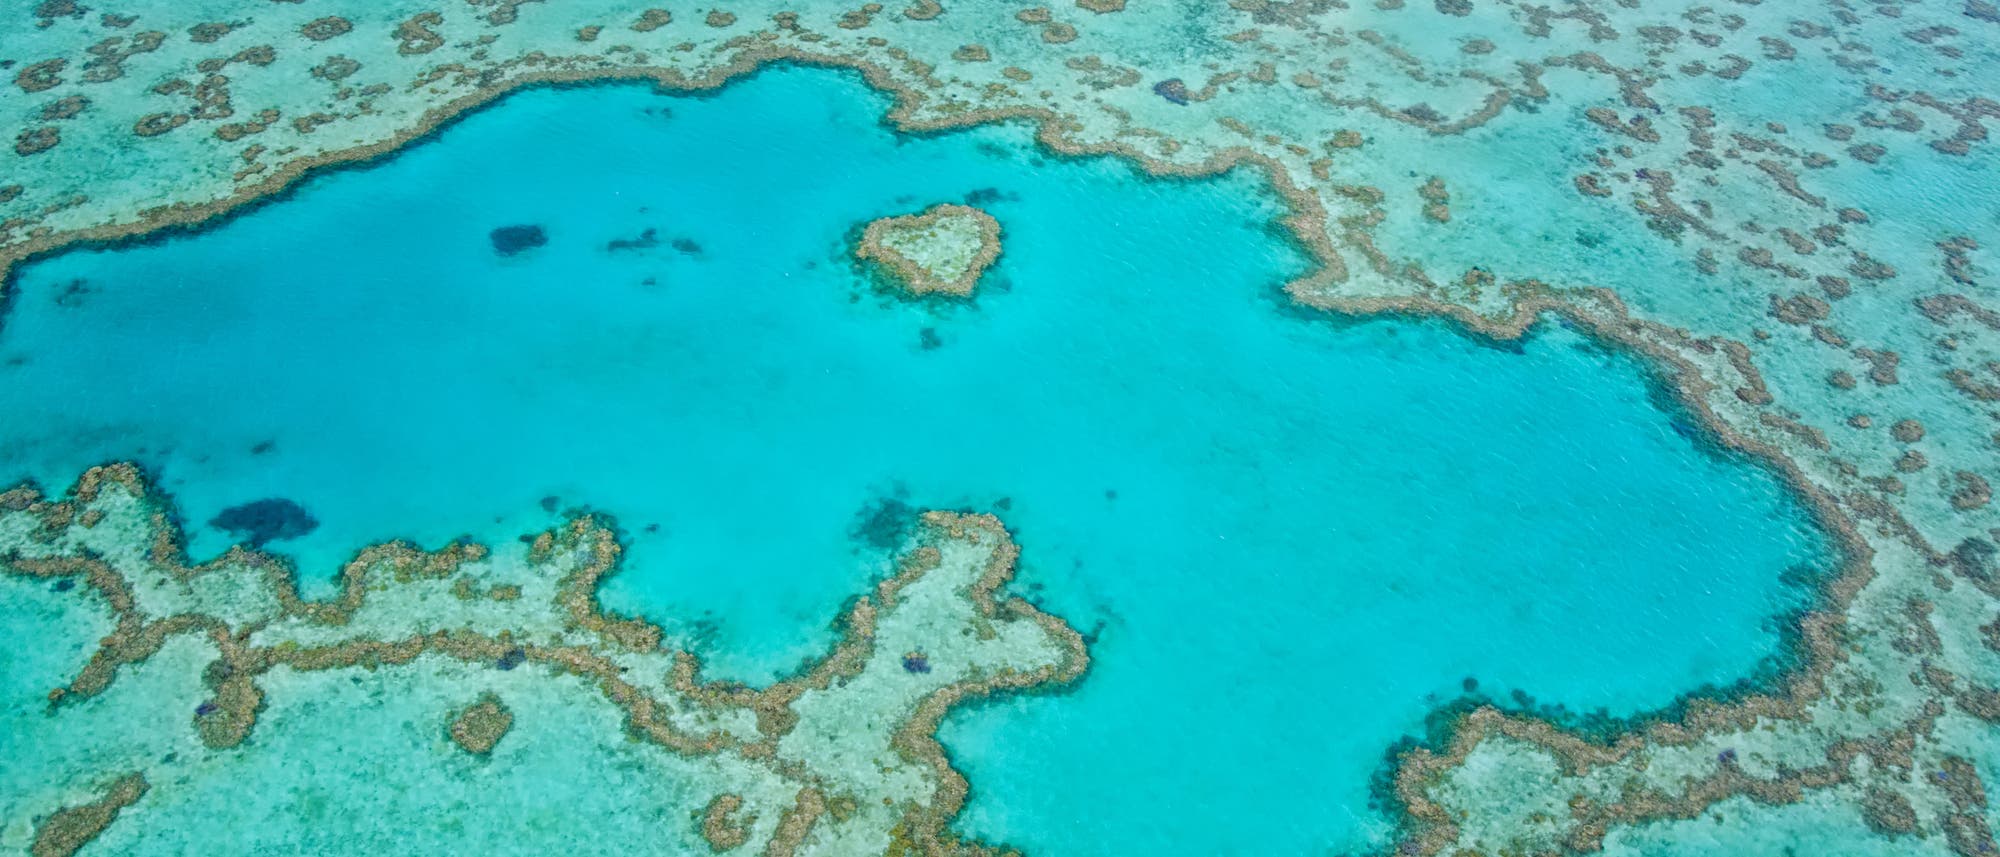 Das Great Barrier Reef von oben: türkisfarbenes Wasser durchzogen von Riffstrukturen